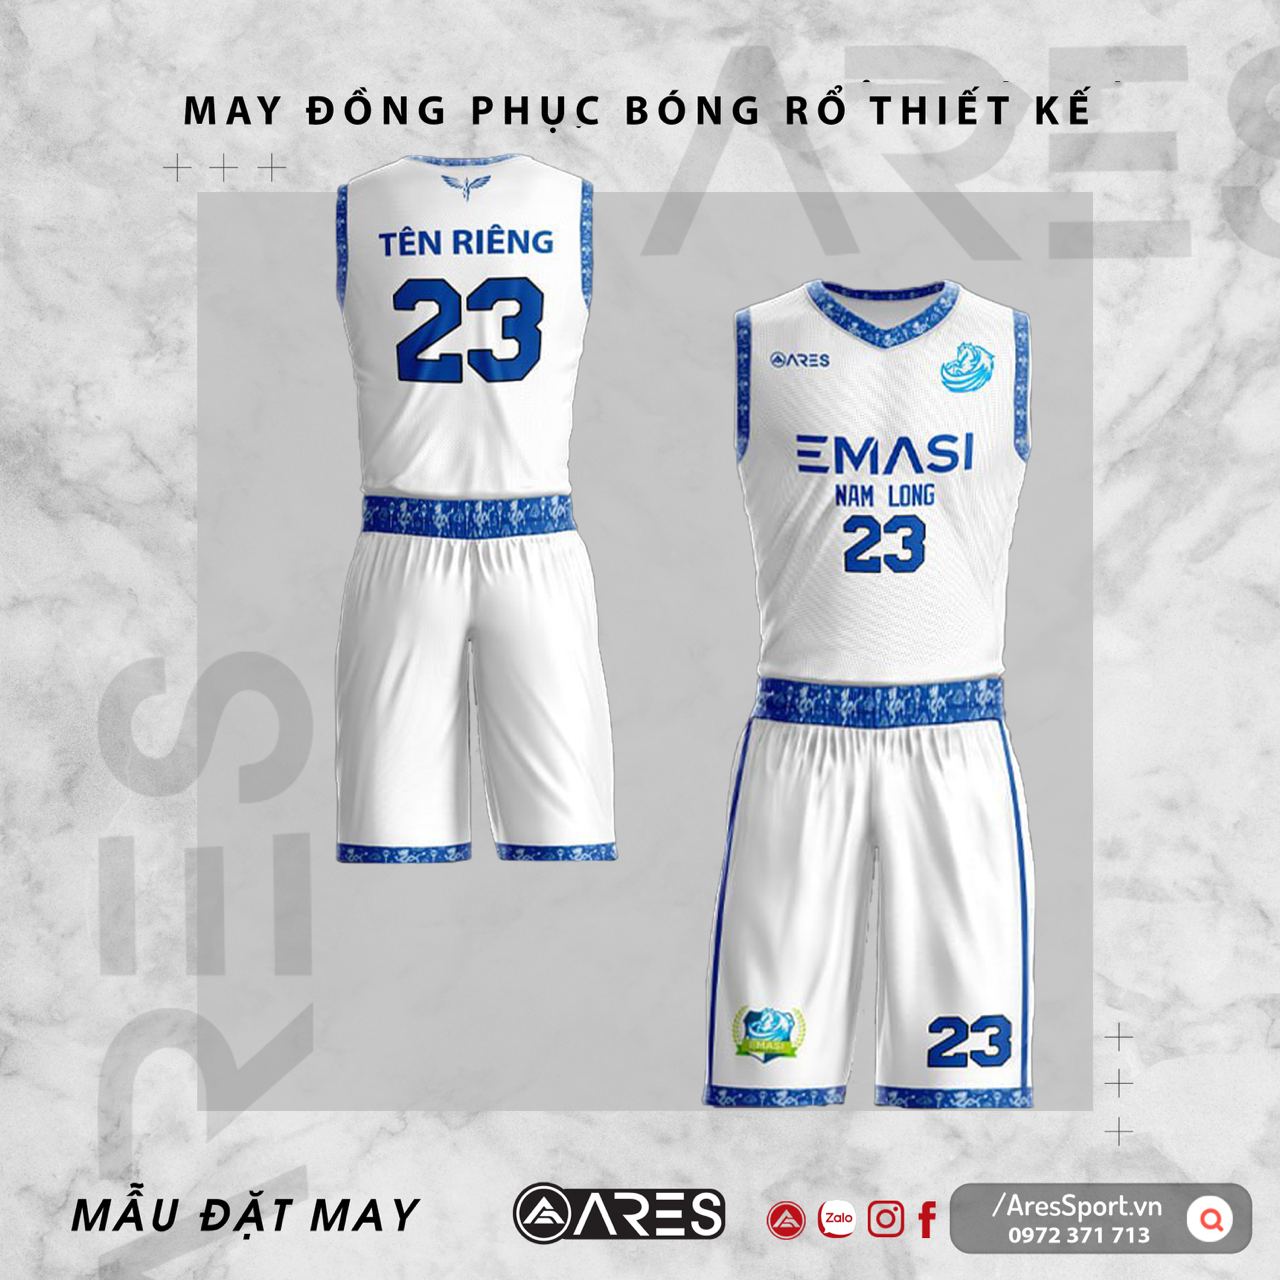 Đồng phục bóng rổ thiết kế Emasi trắng xanh da đơn giản nhưng thanh lịch